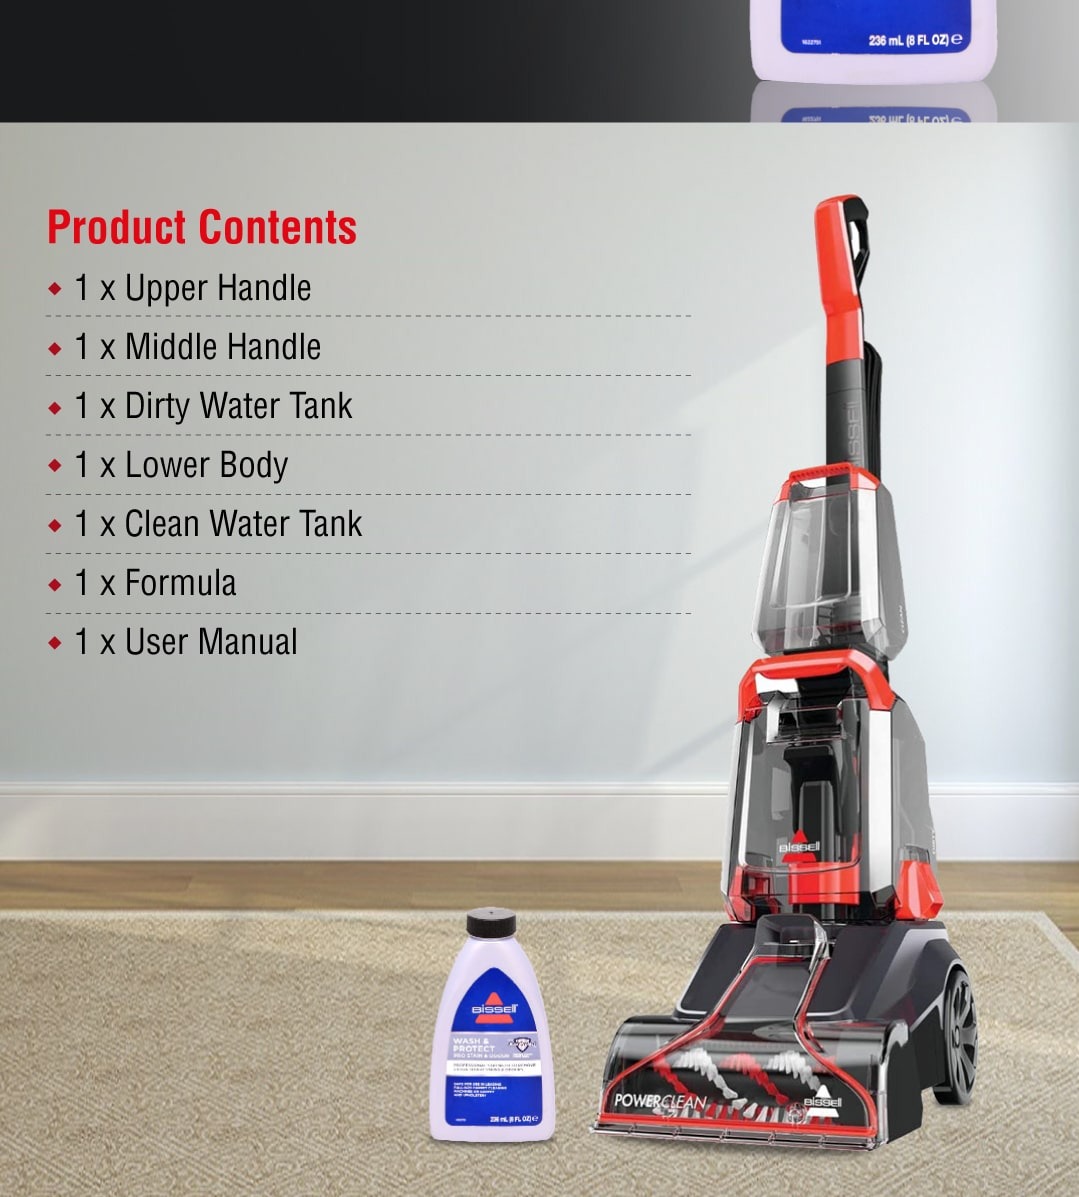 https://statics.citrusstv.com/media/wysiwyg/Campaigns/2021/Enhanced/Bissell/Turbo-Clean-Brush-Carpet-Washer-EN-7.jpg